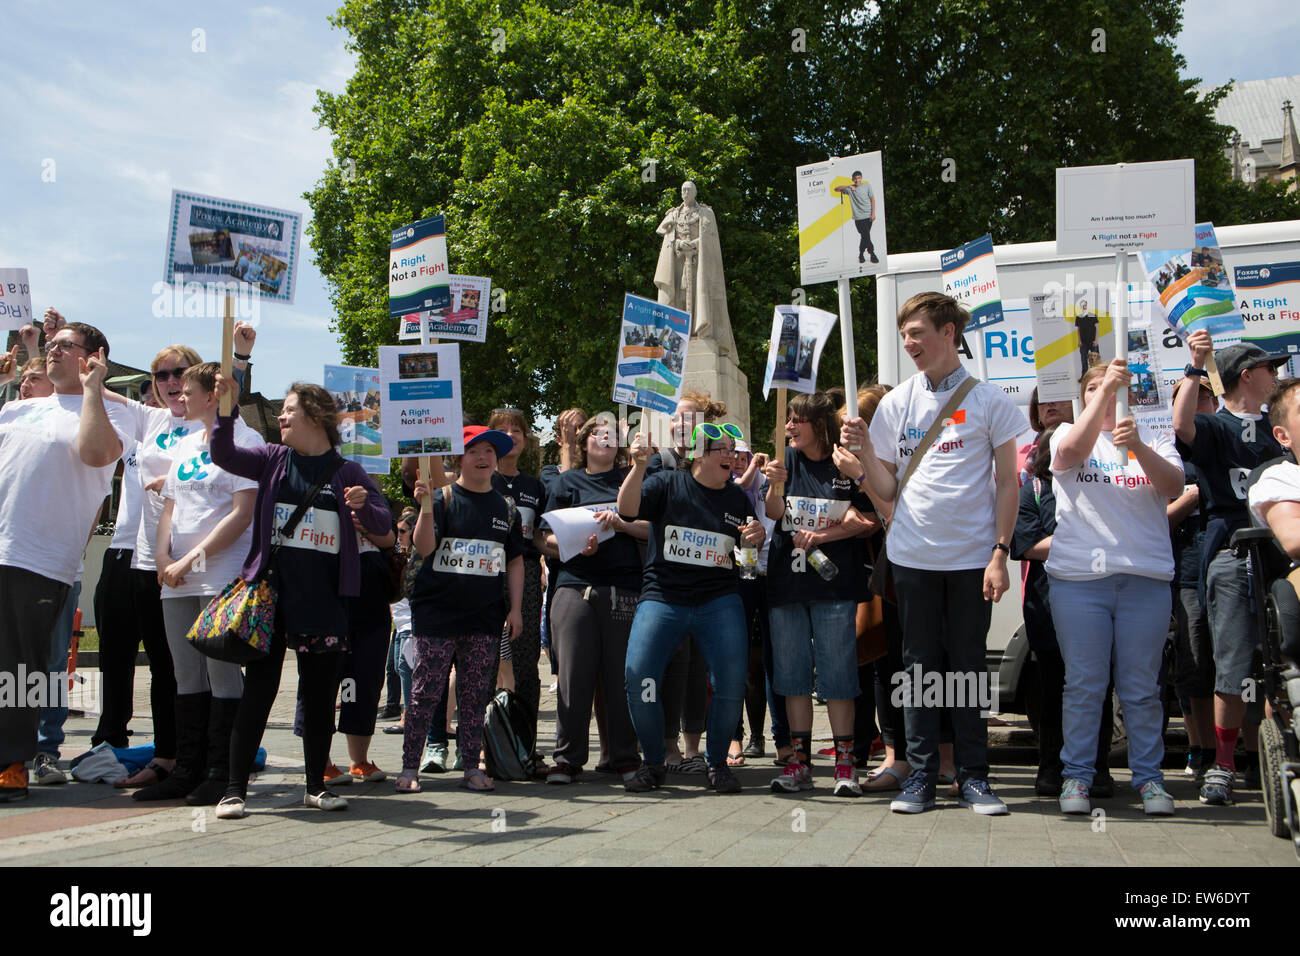 Los manifestantes se reúnen para apoyar el "derecho no una lucha", campaña en Westminster, Londres. Foto de stock